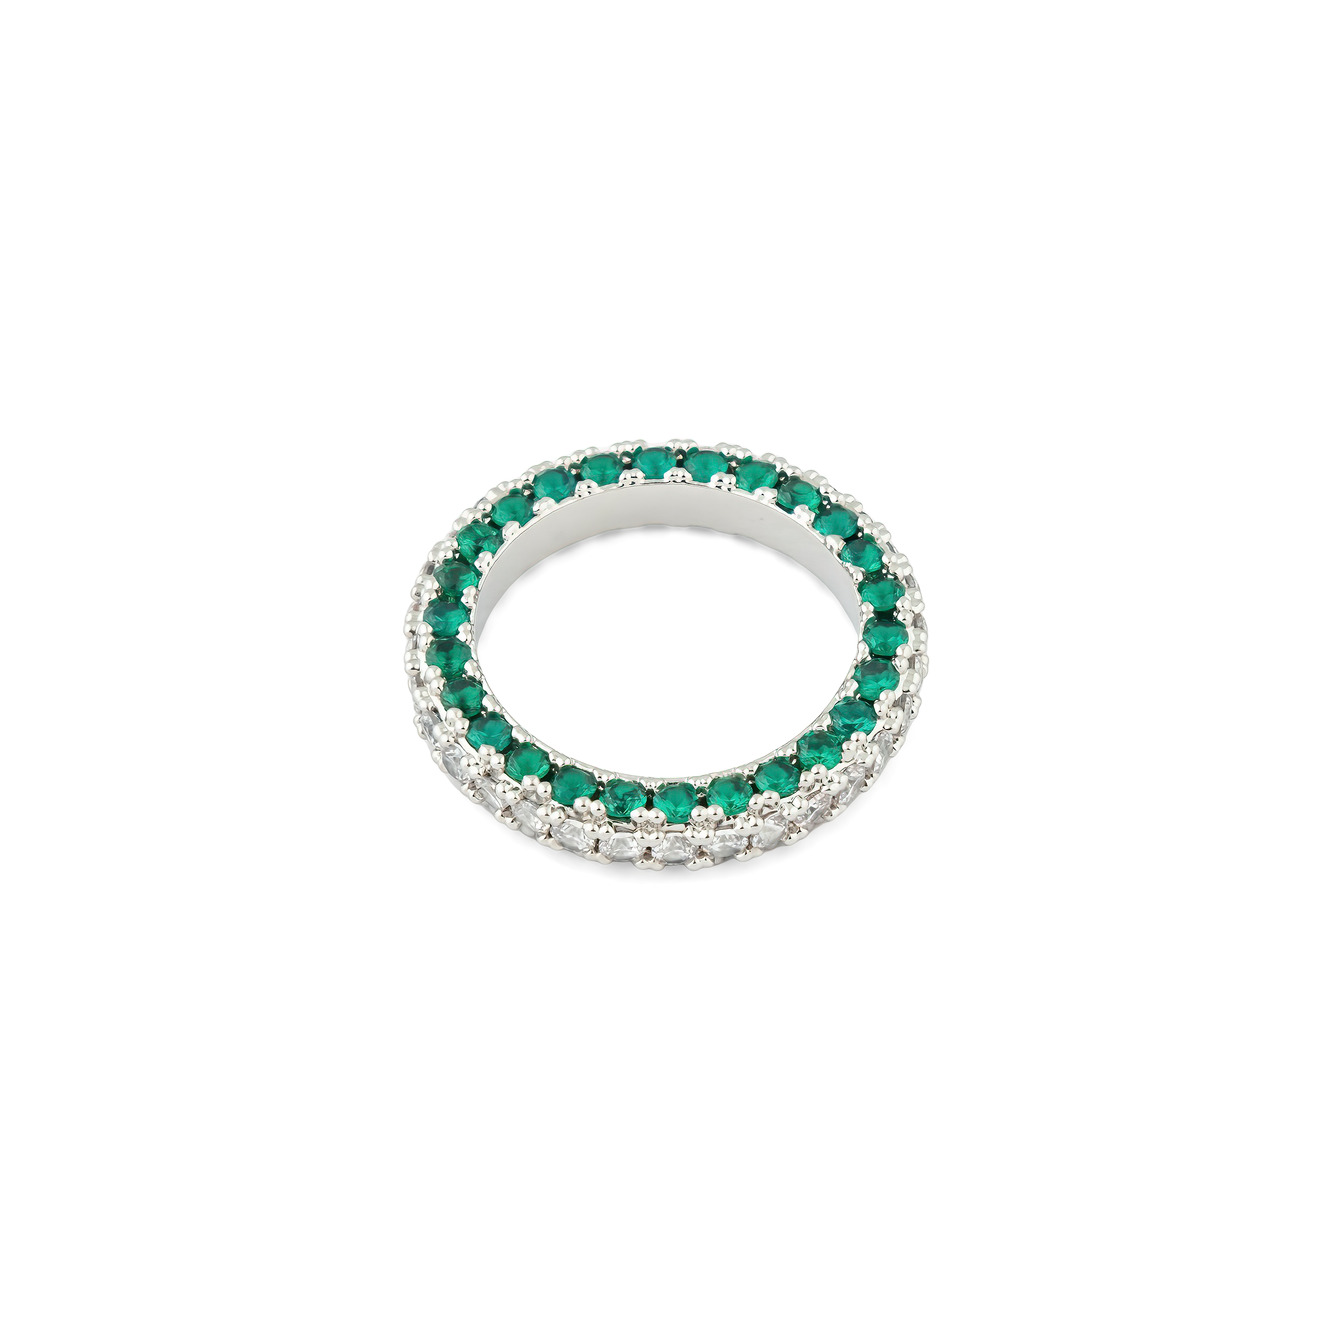 Herald Percy Серебристое кольцо с белыми и зелеными кристаллами herald percy серебристое колье с кристаллами в виде бабочки